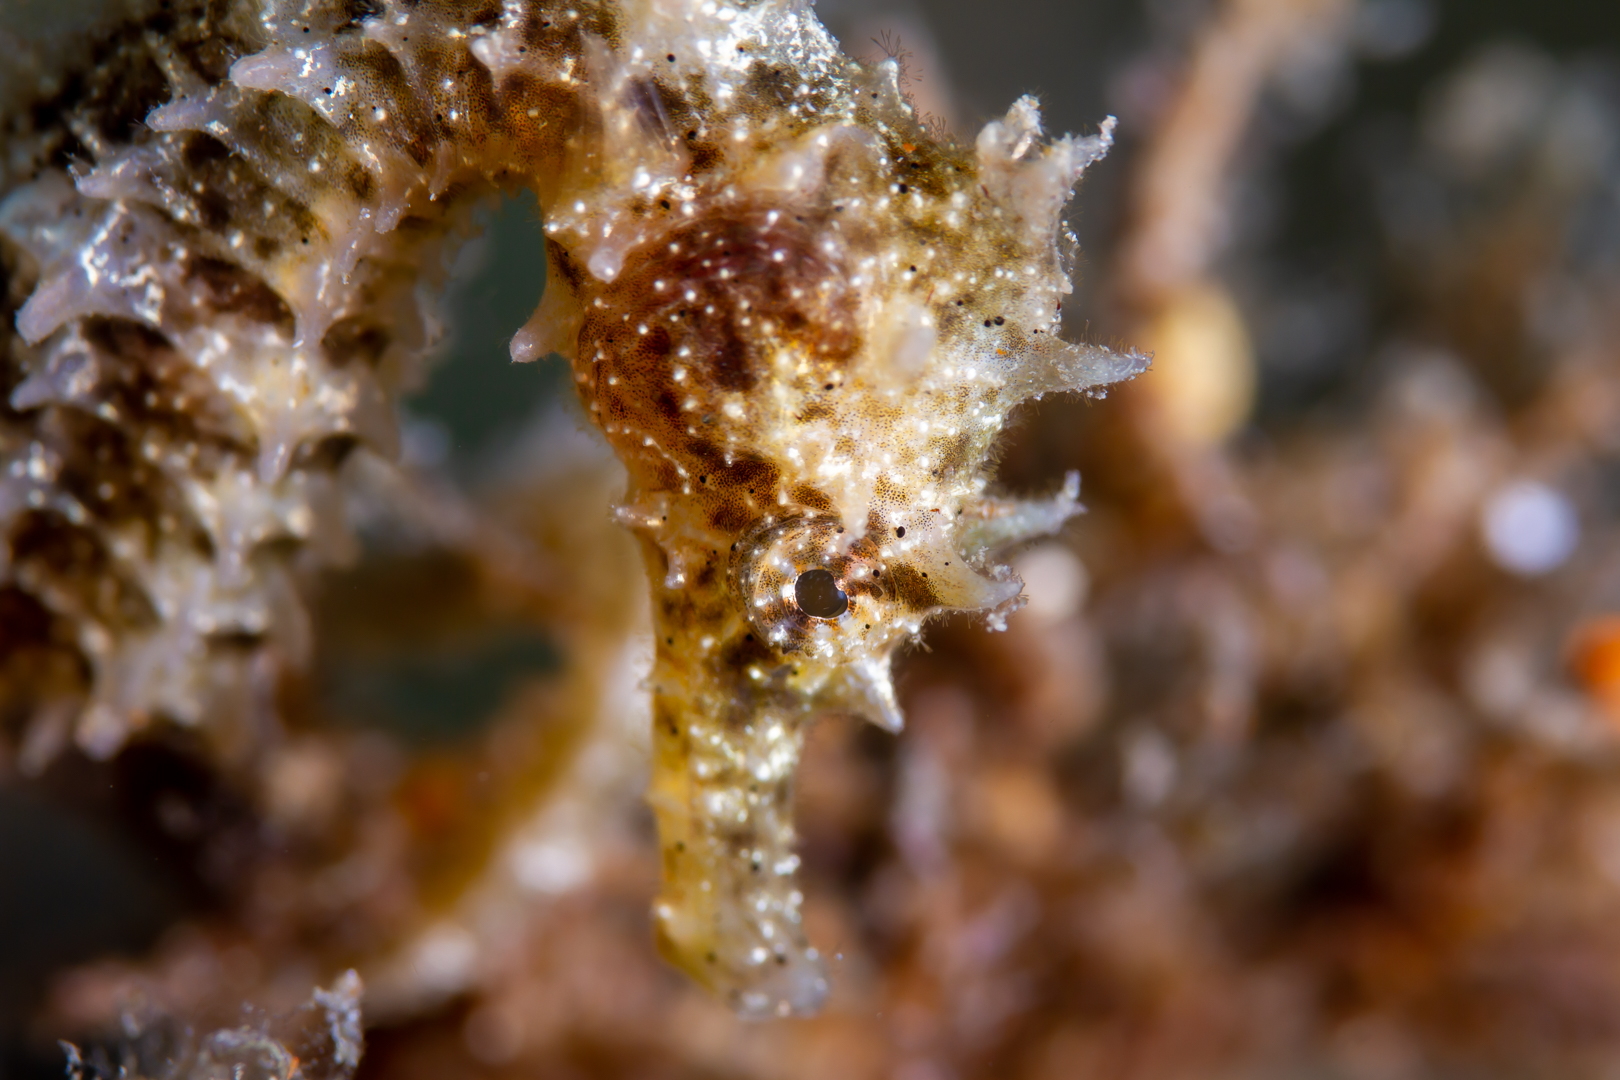 Perfil de un caballito de mar situado en un fondo de rocas y algas marinas. Foto submarina.